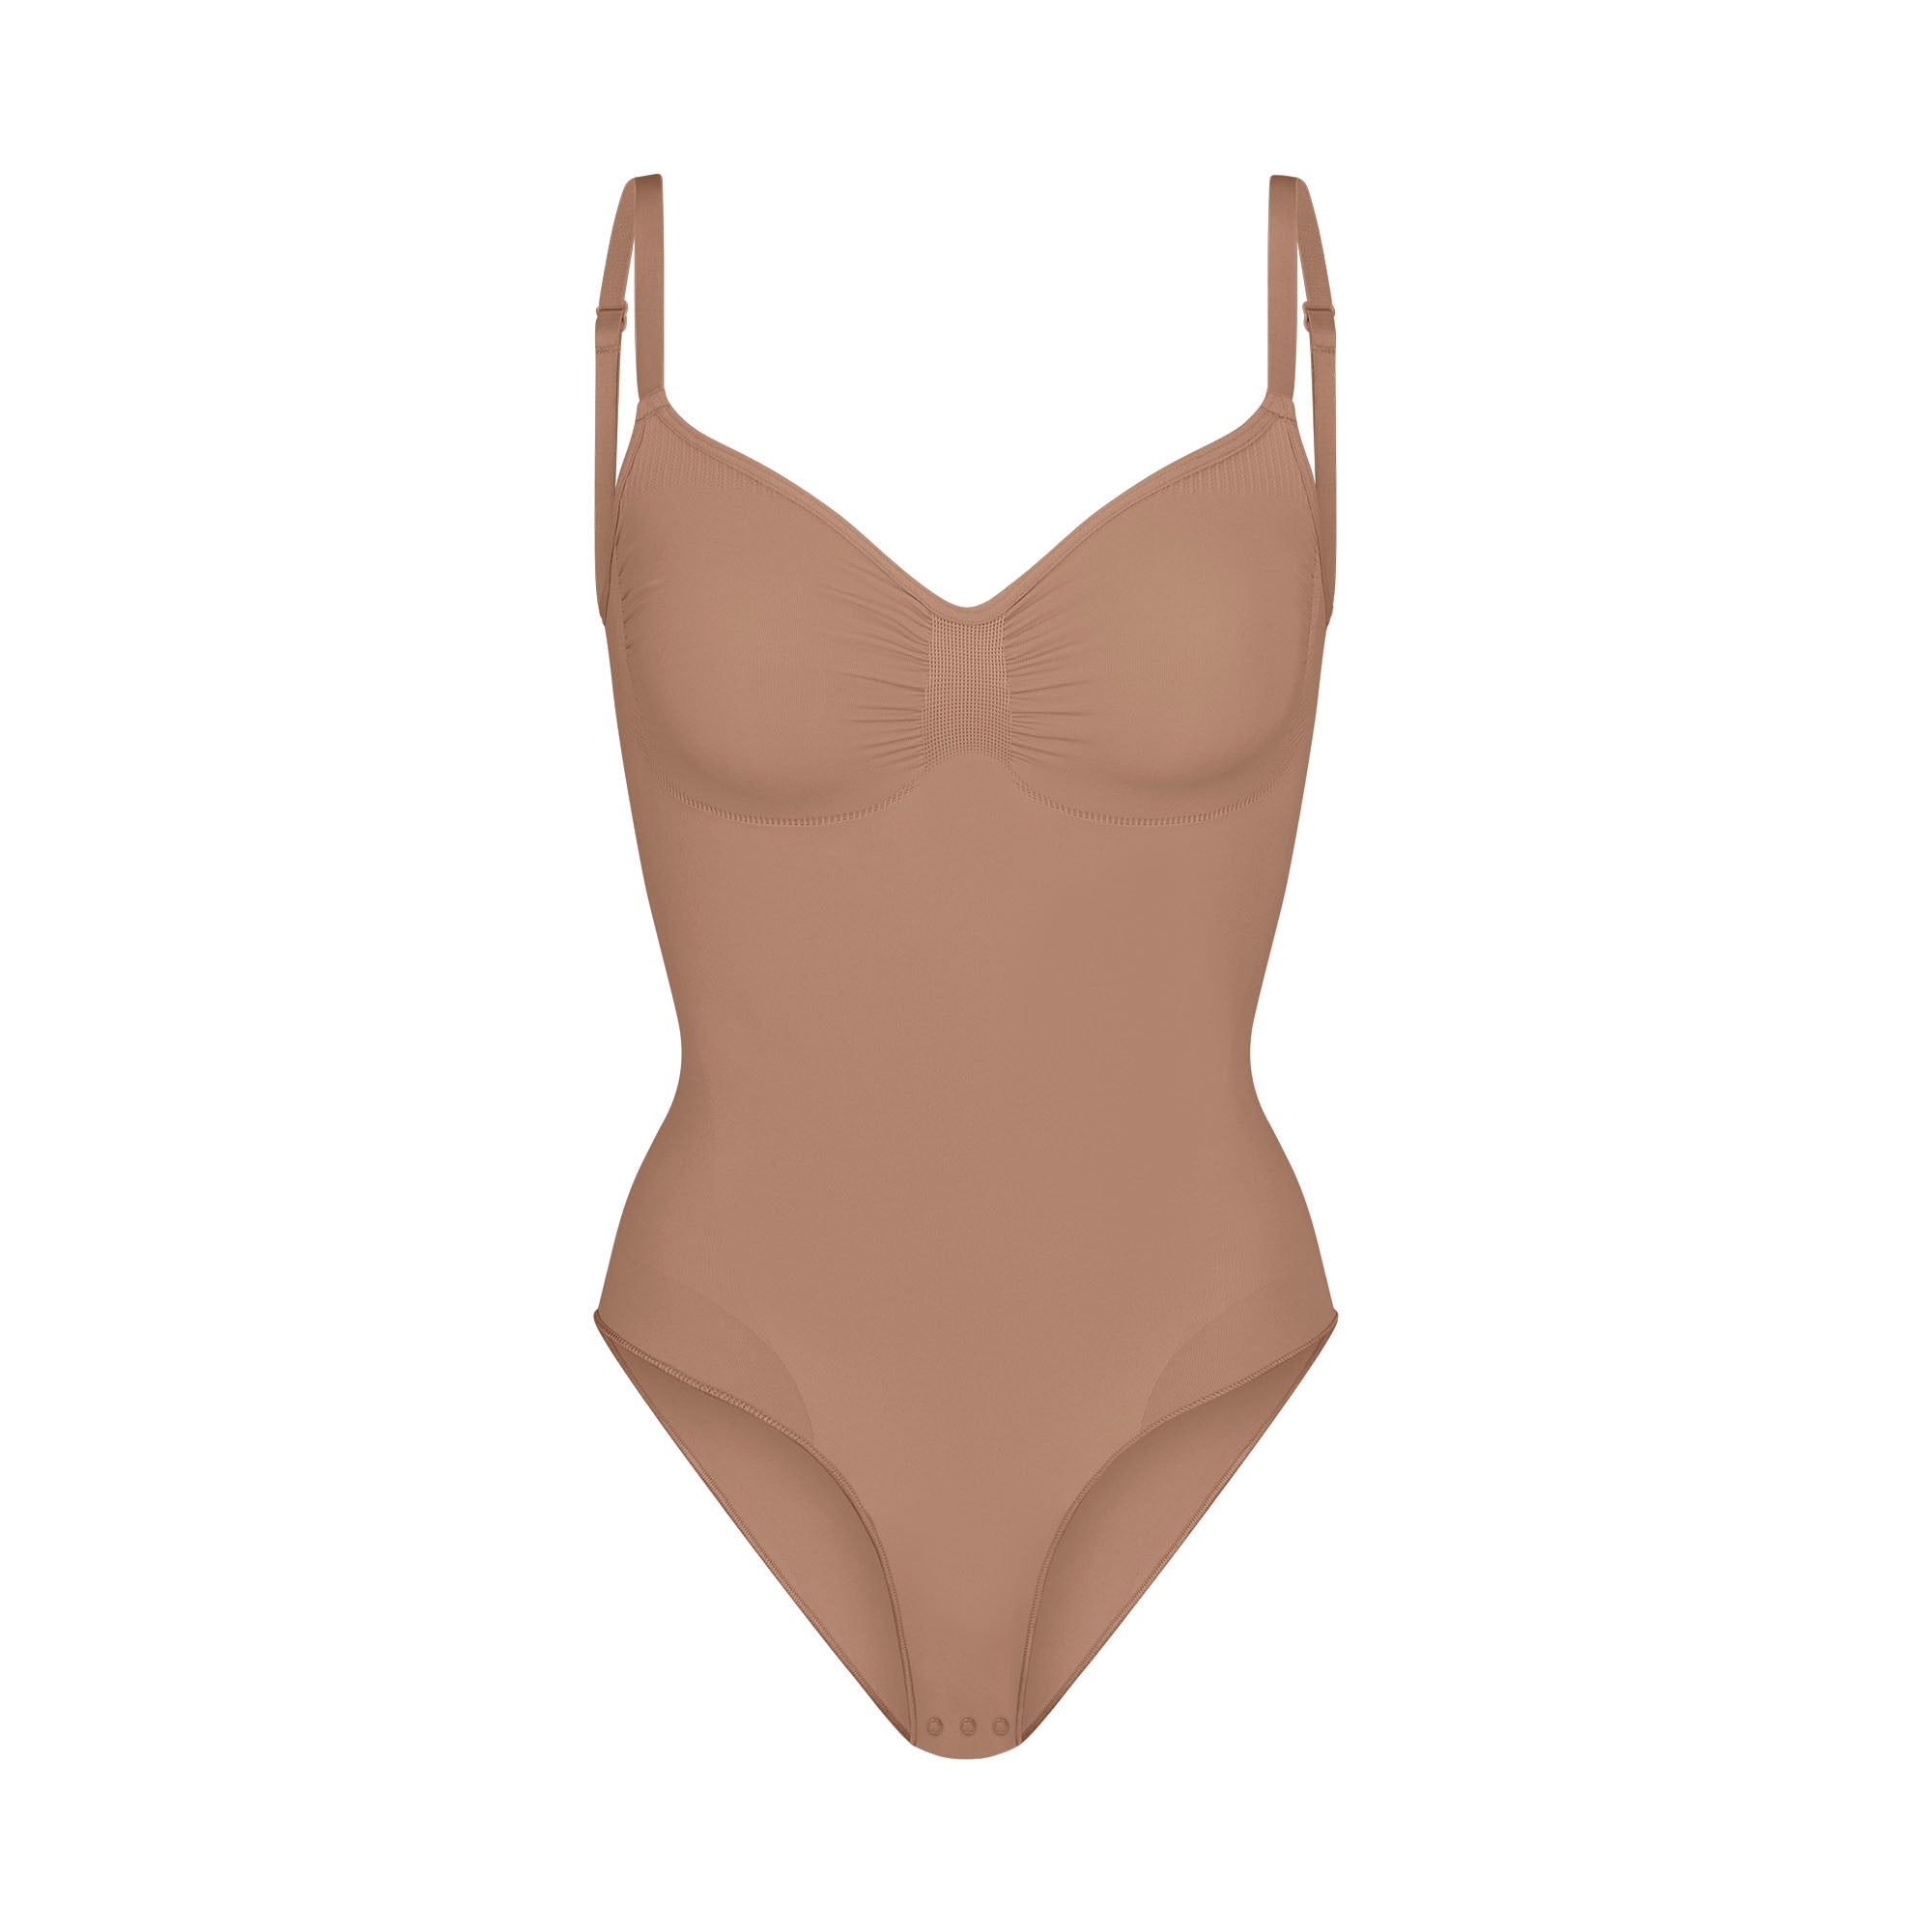 SKIMS by Kim Kardashian to design Team USA's underwear — TFR